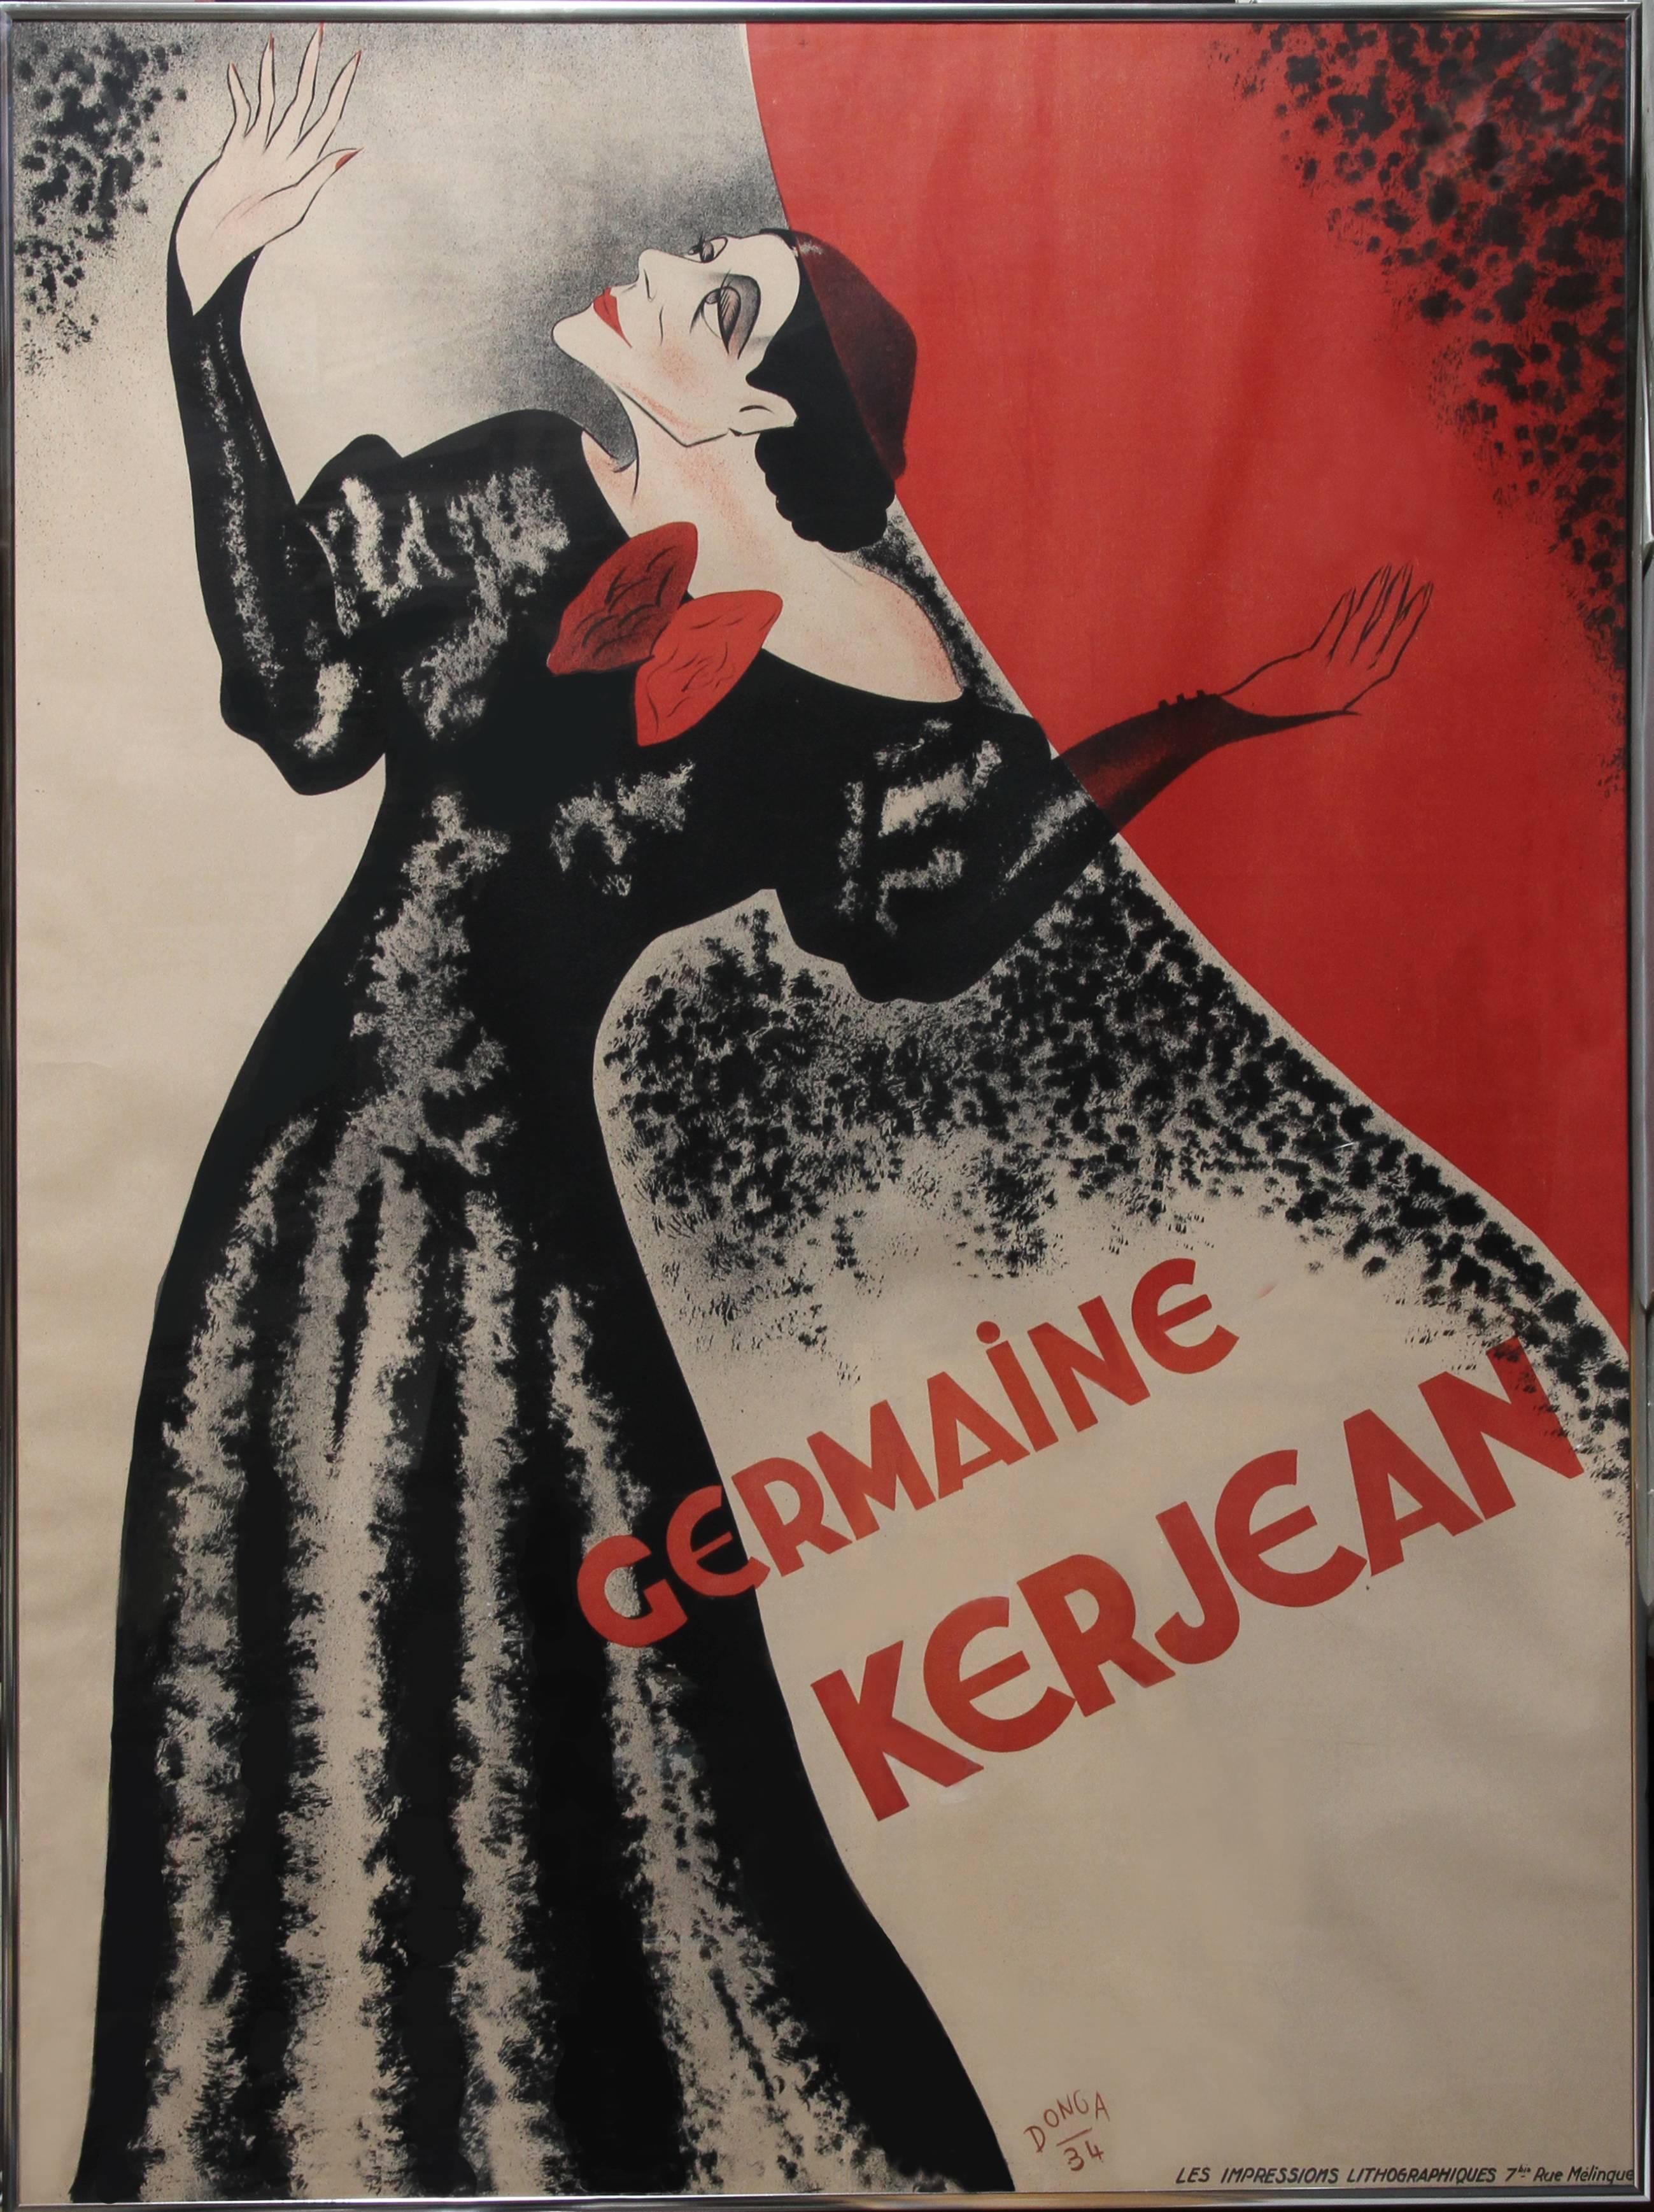 Germaine Kerjean, Lithograph Poster 1934